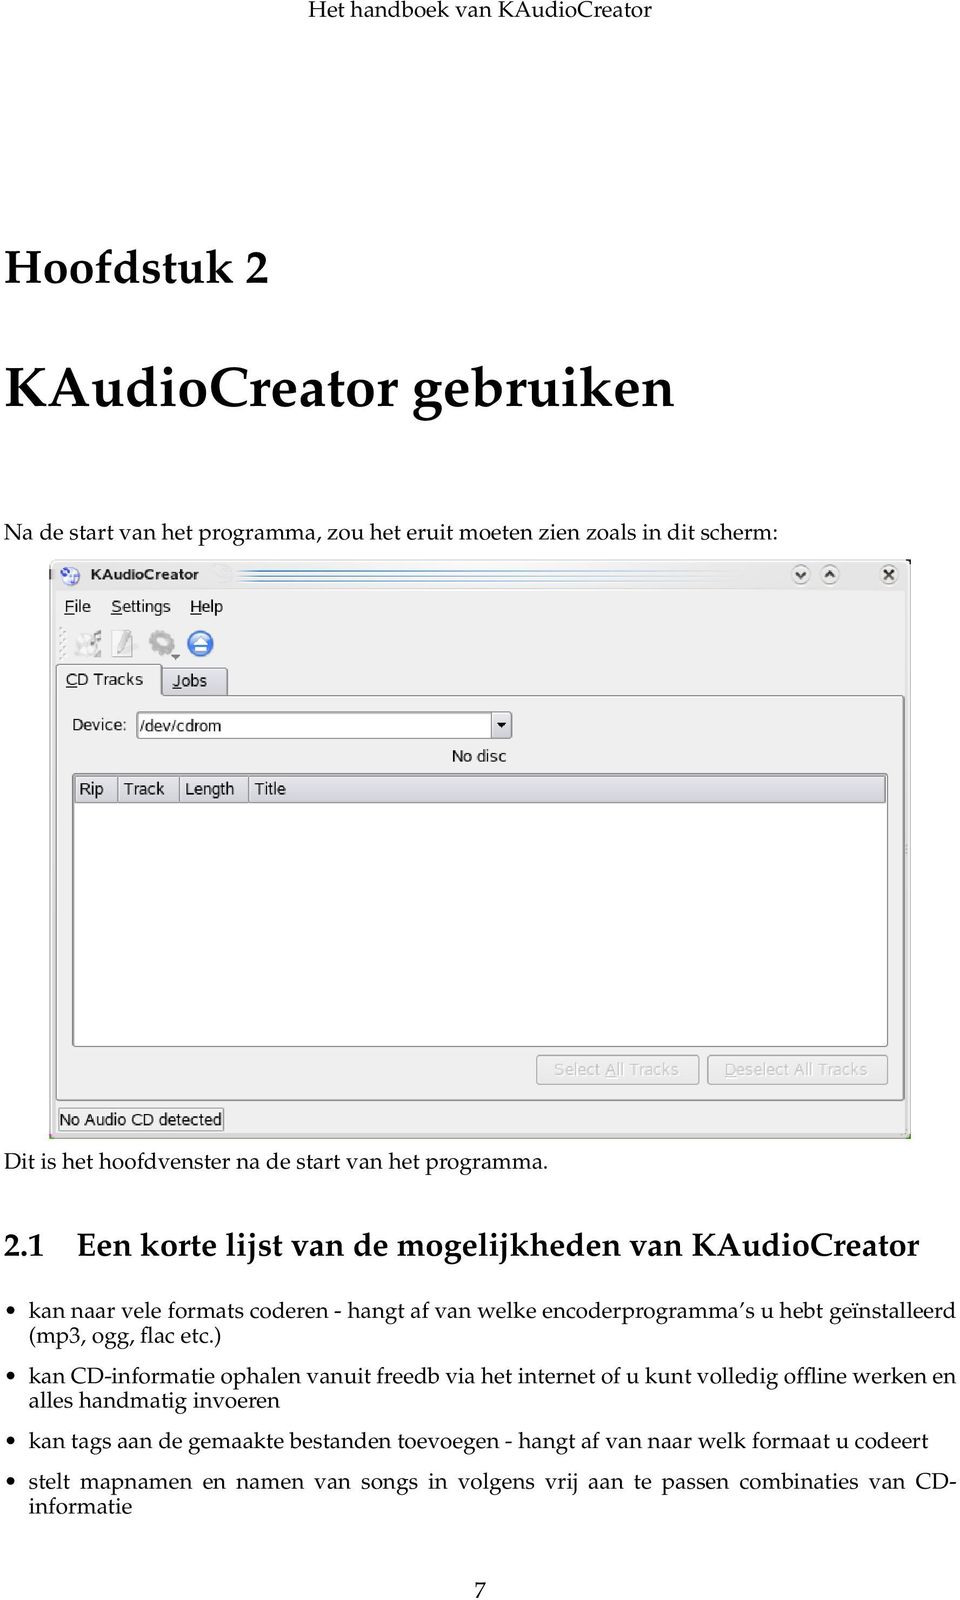 1 Een korte lijst van de mogelijkheden van KAudioCreator kan naar vele formats coderen - hangt af van welke encoderprogramma s u hebt geïnstalleerd (mp3, ogg,